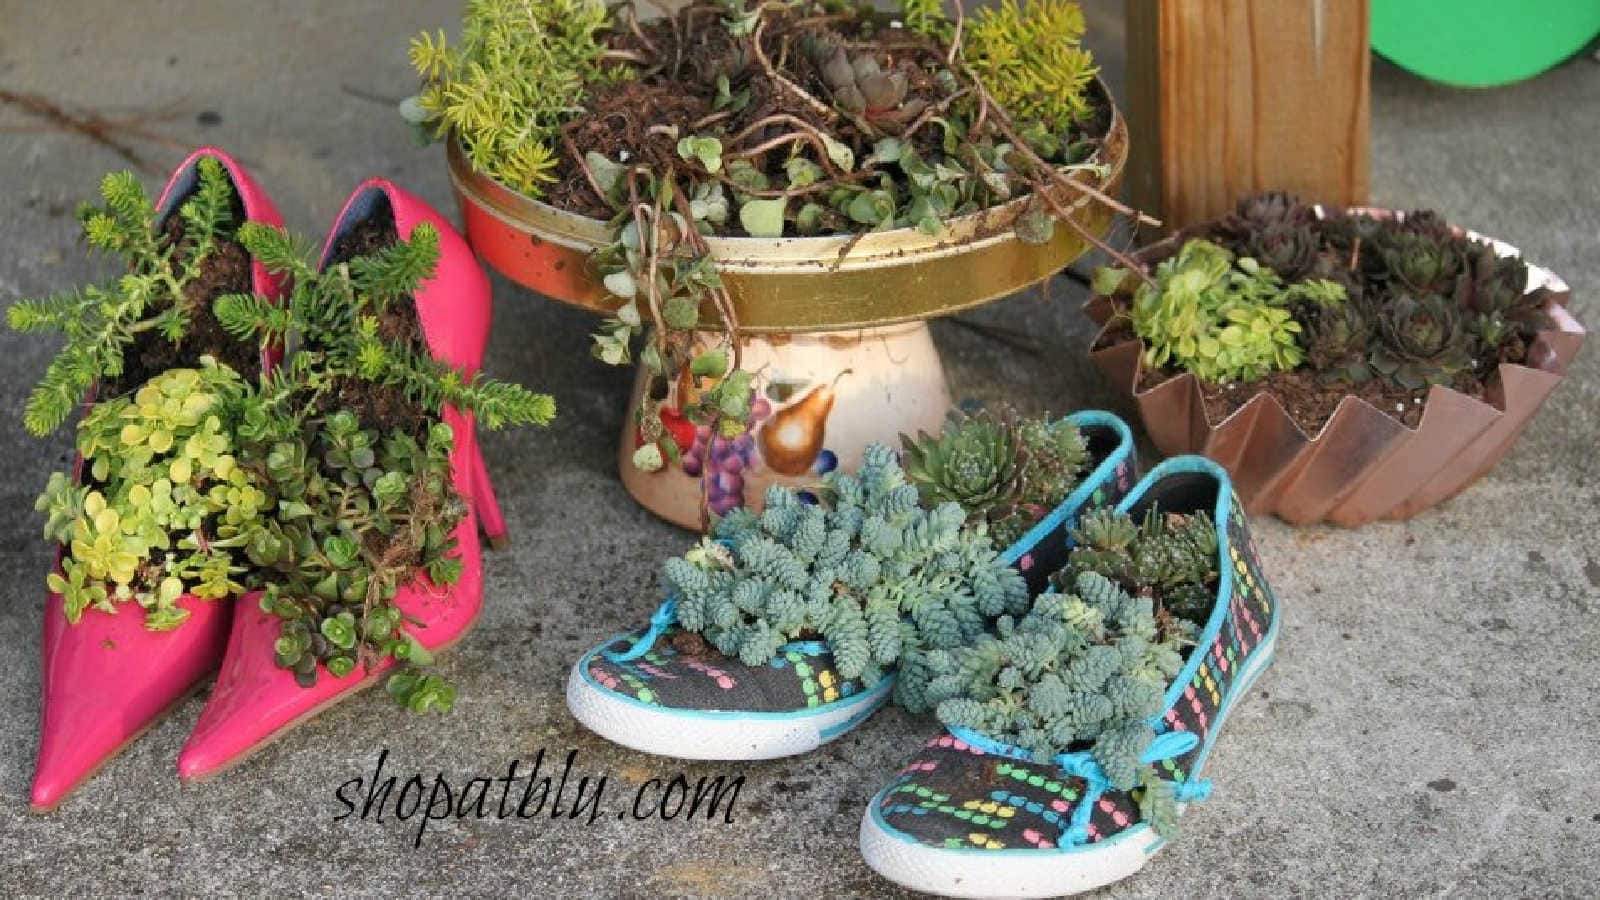 shoe planters